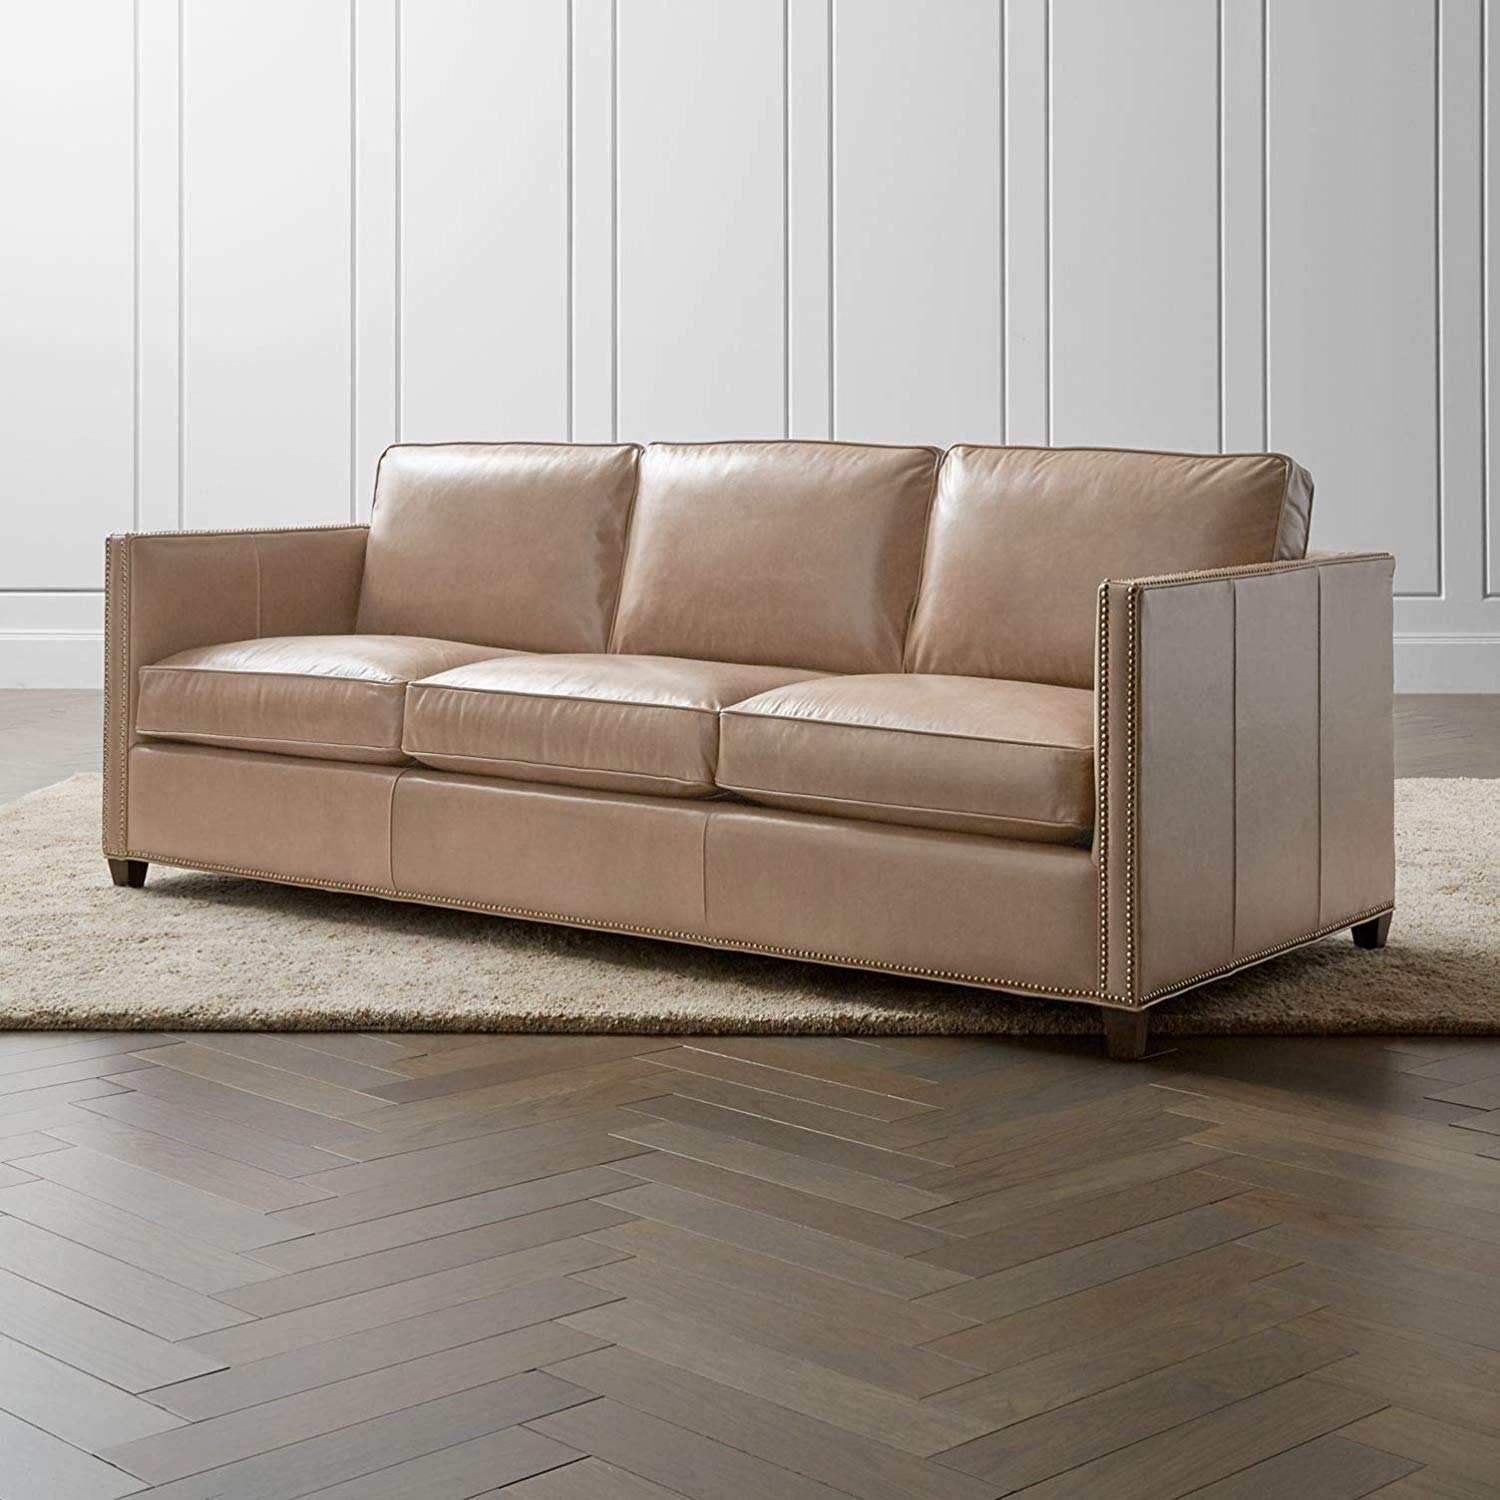 3 Seater Sofa:- Ultra Leatherette Sofa Set (Beige)